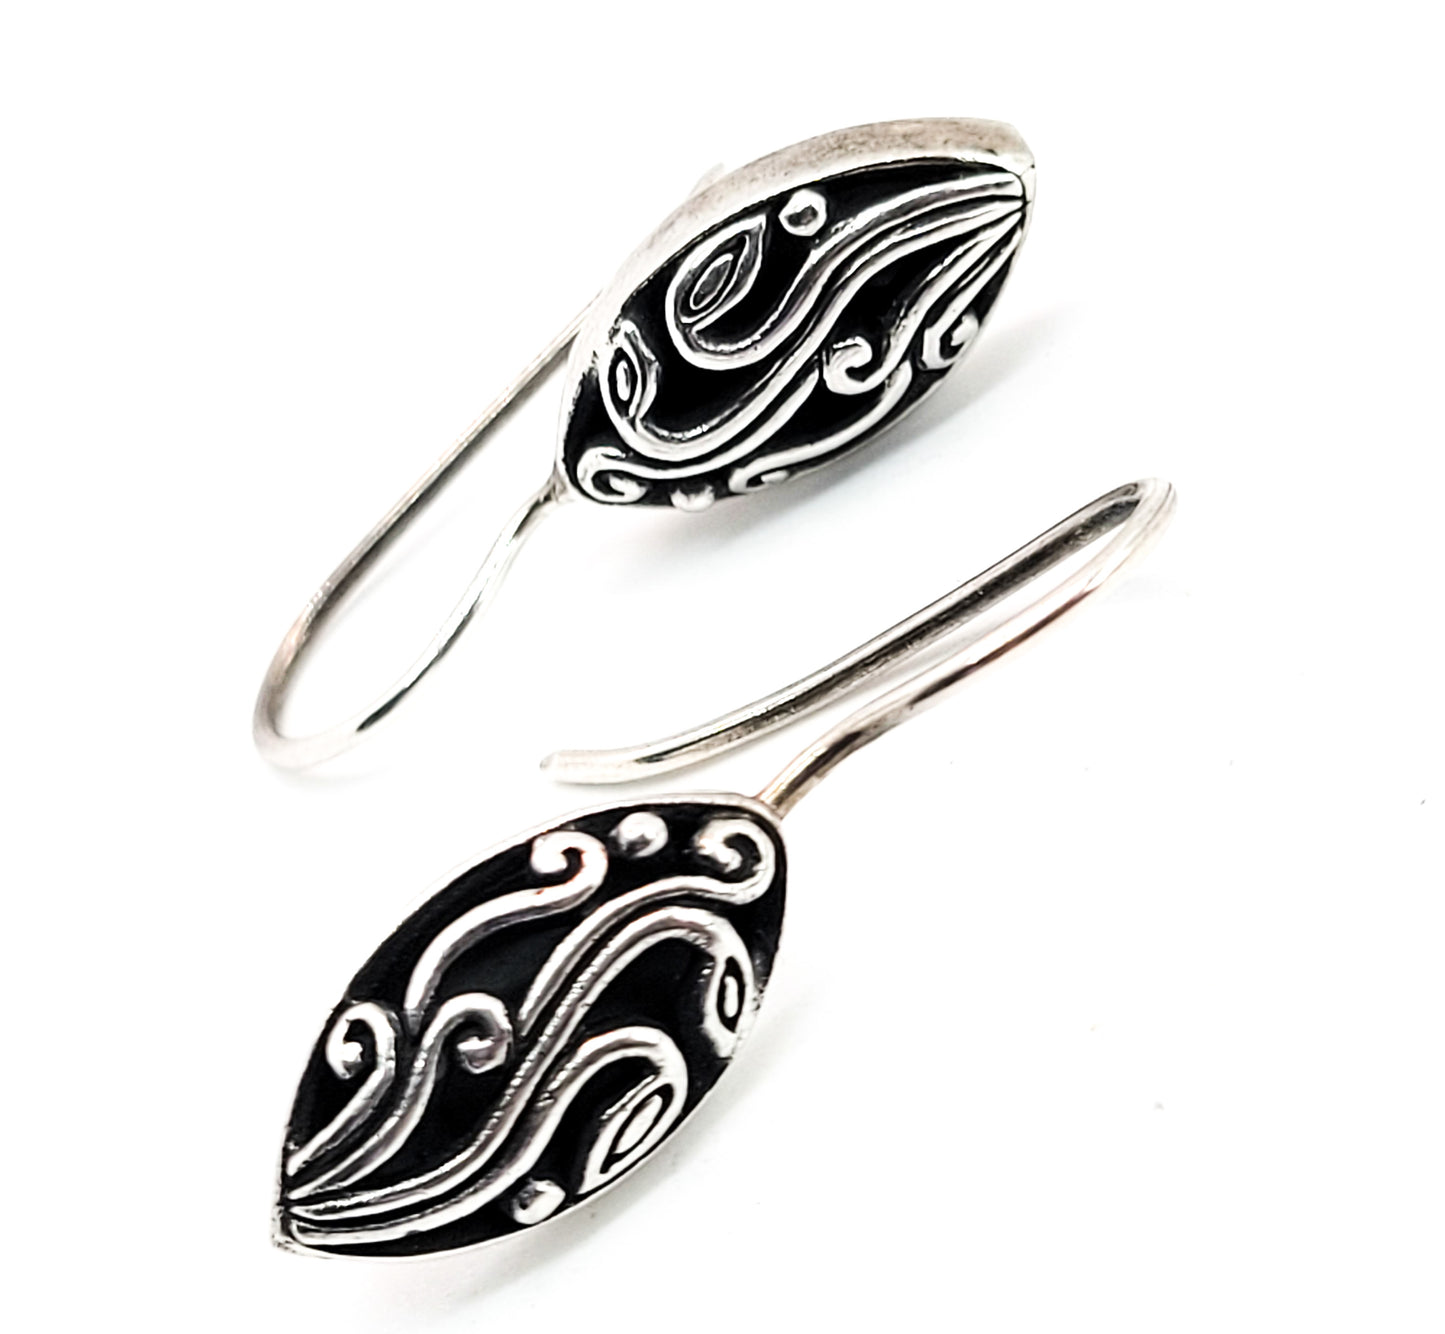 ATI Annika Witt Balinese tribal open work scroll teardrop sterling silver earrings